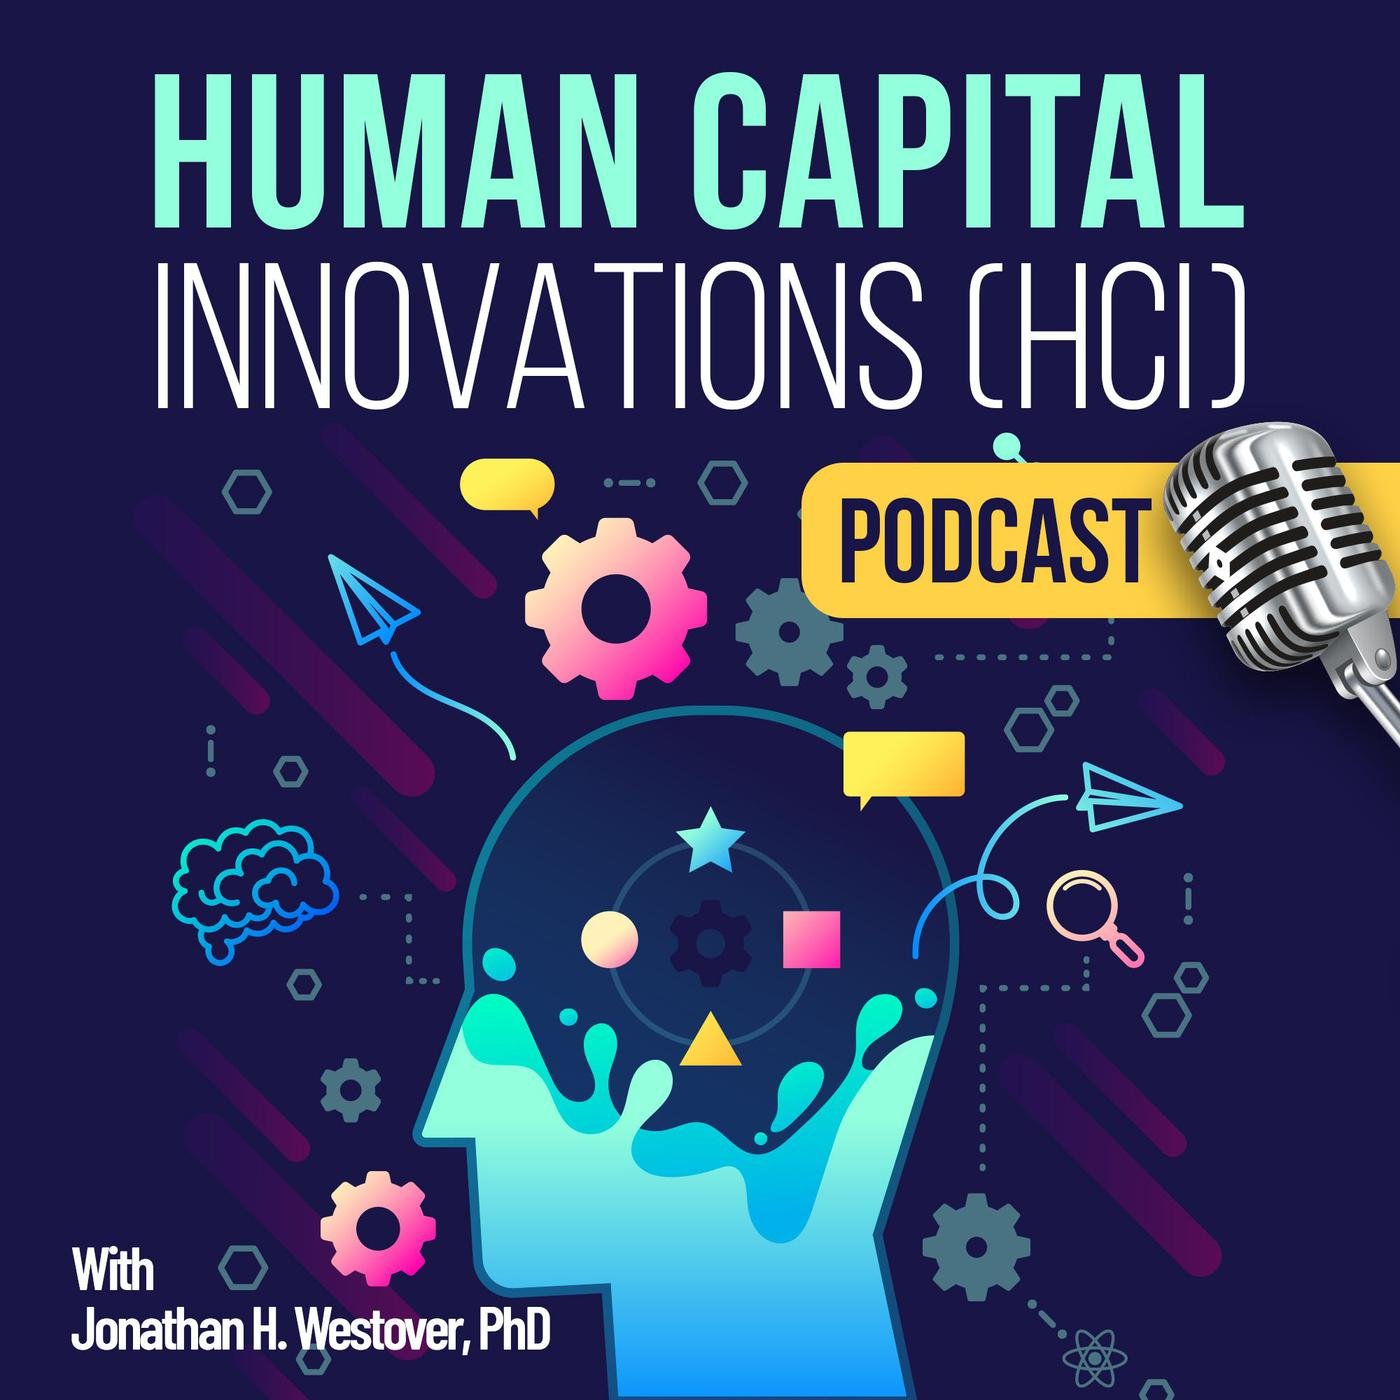 human-capital-innovations-hci-podcast-d7wIm_Hzihx-m6cxGzuOt98.1400x1400.jpg